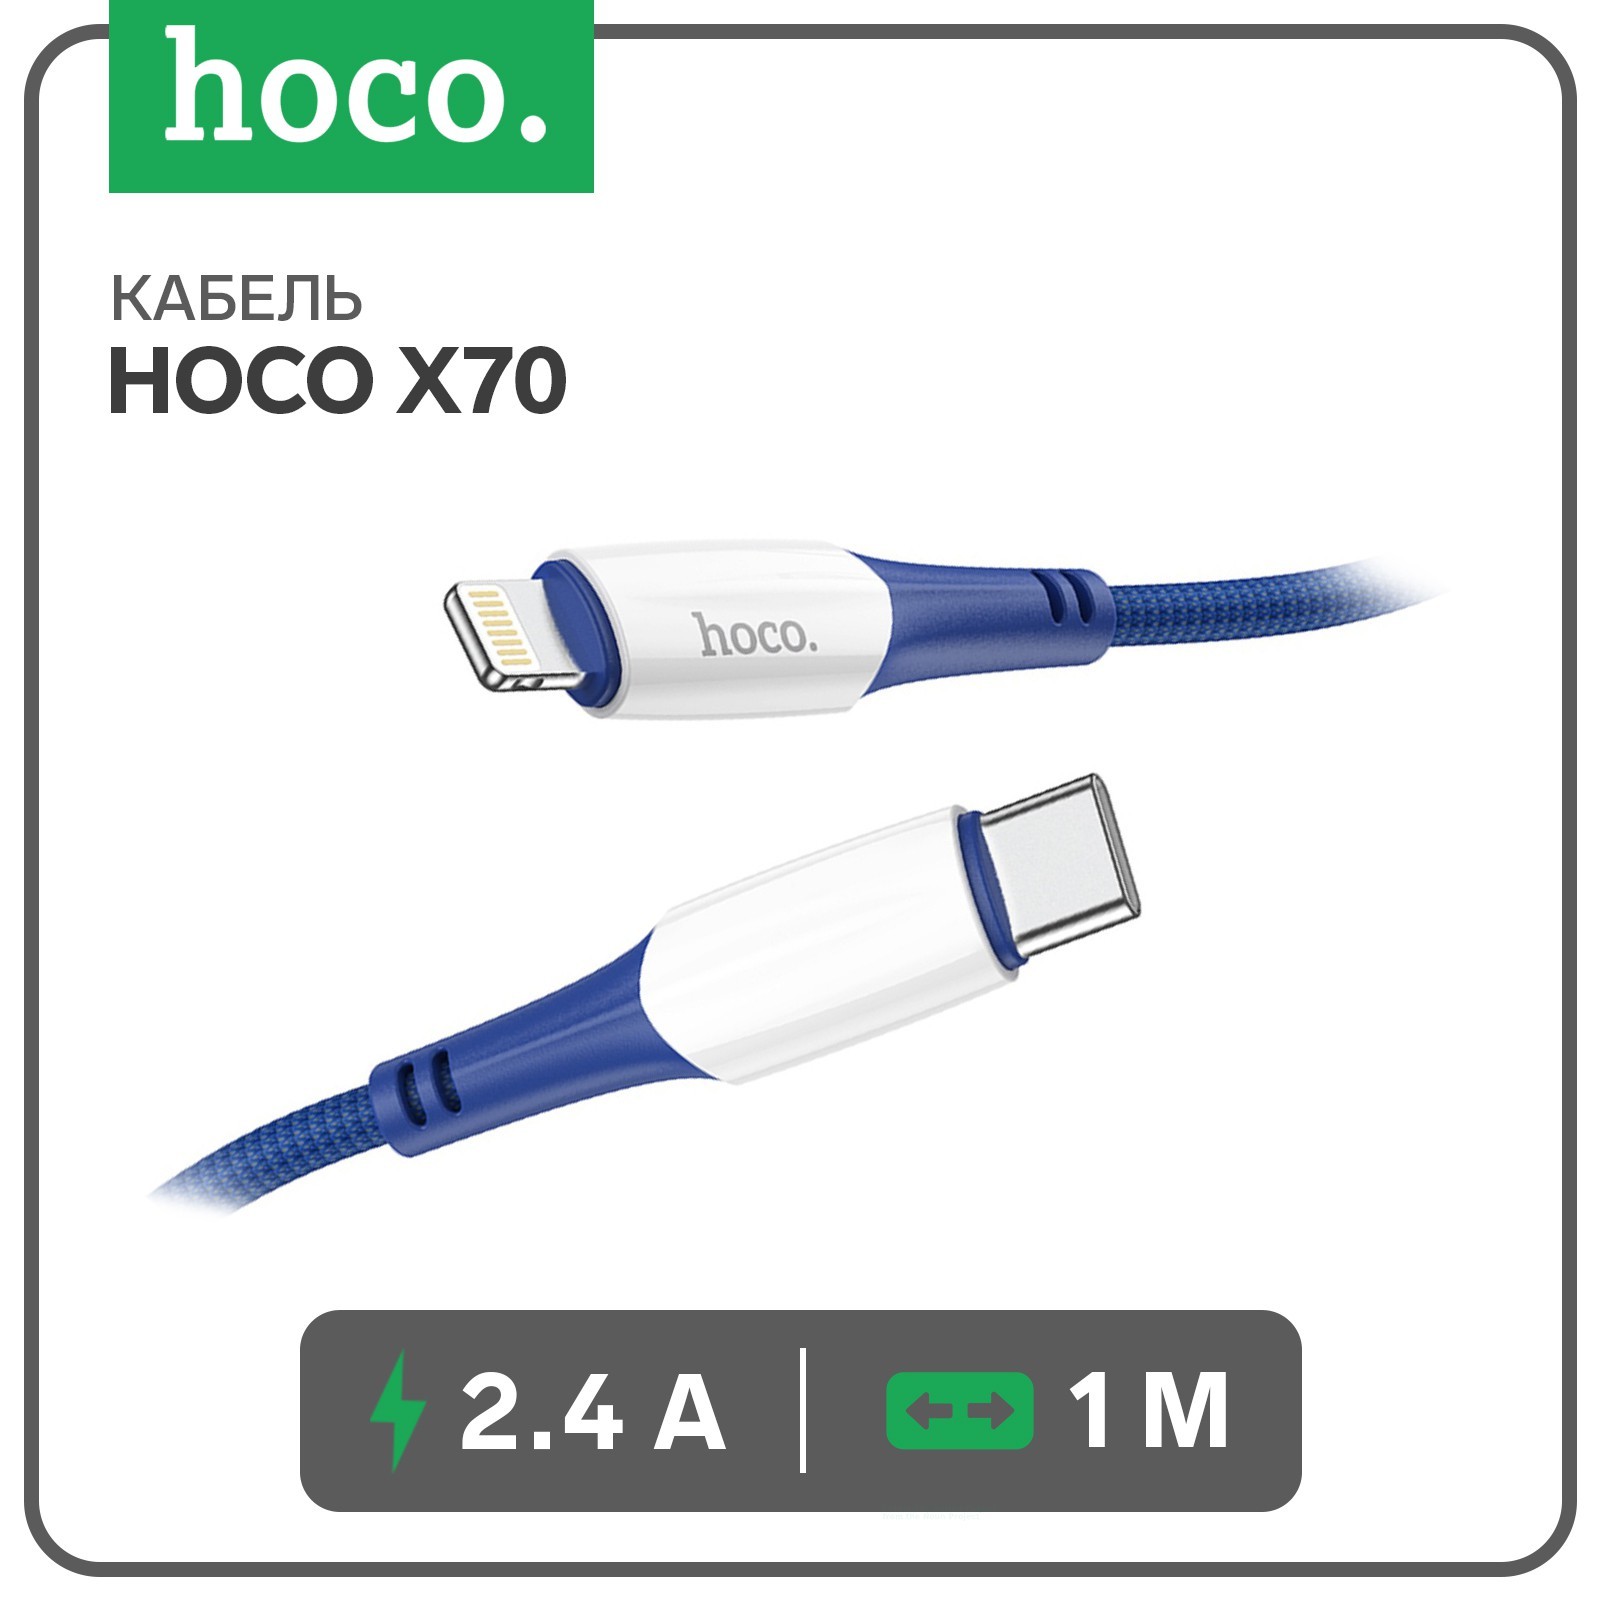 Кабель Hoco X70 Ferry USB Type-C - Lightning 1 м, синий, купить в Москве, цены в интернет-магазинах на Мегамаркет